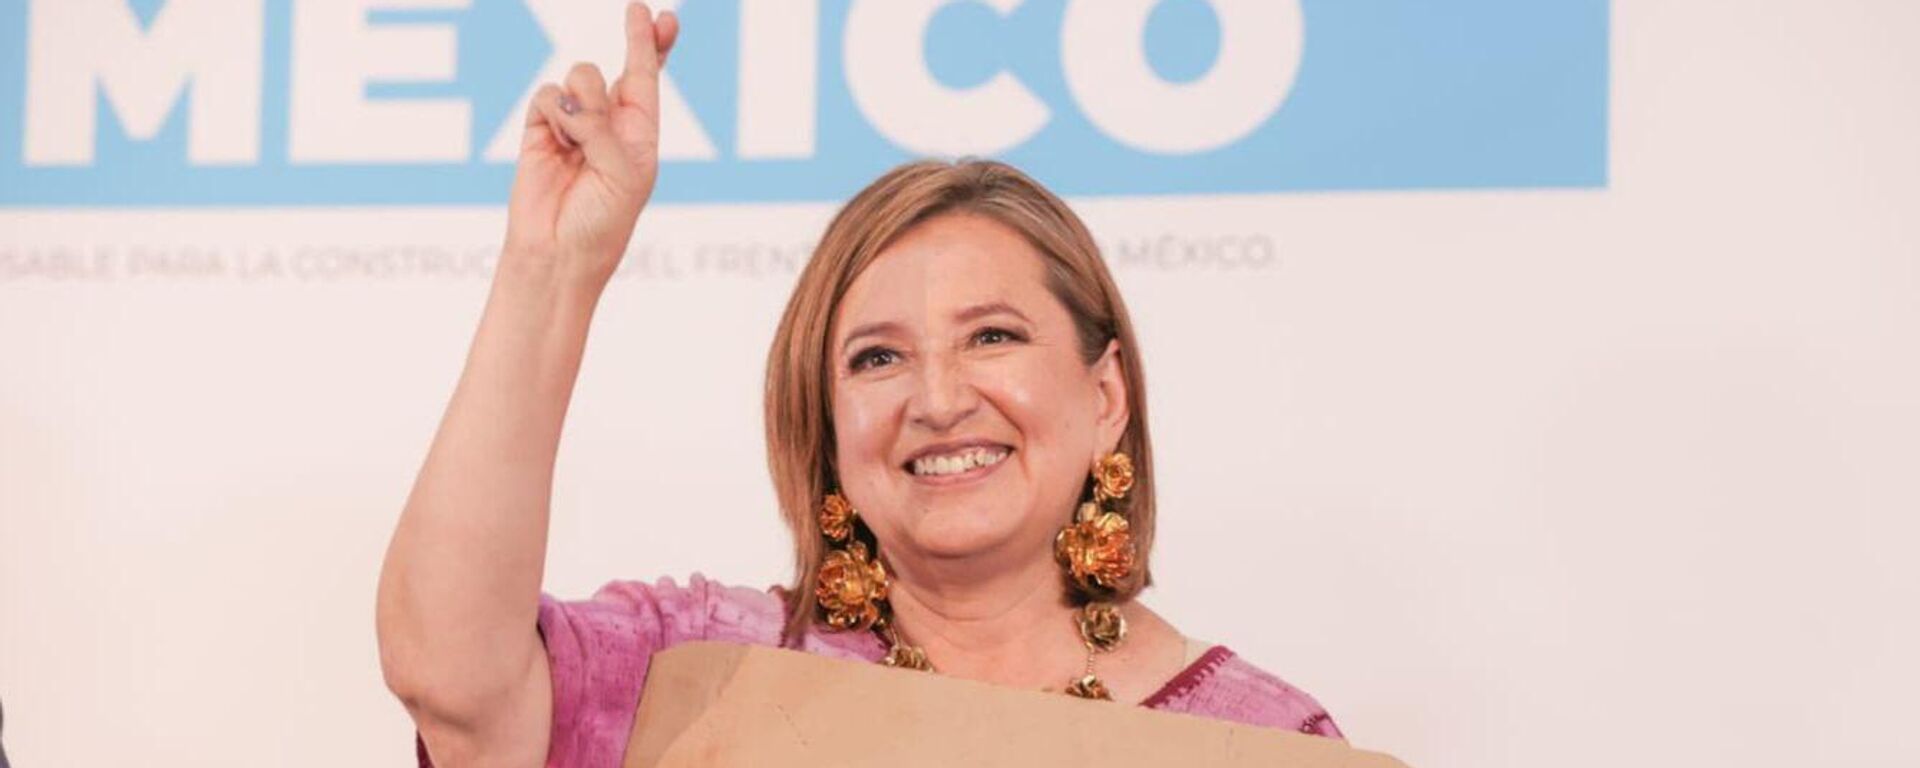 Piden 80 años de prisión para hermana de candidata presidencial mexicana